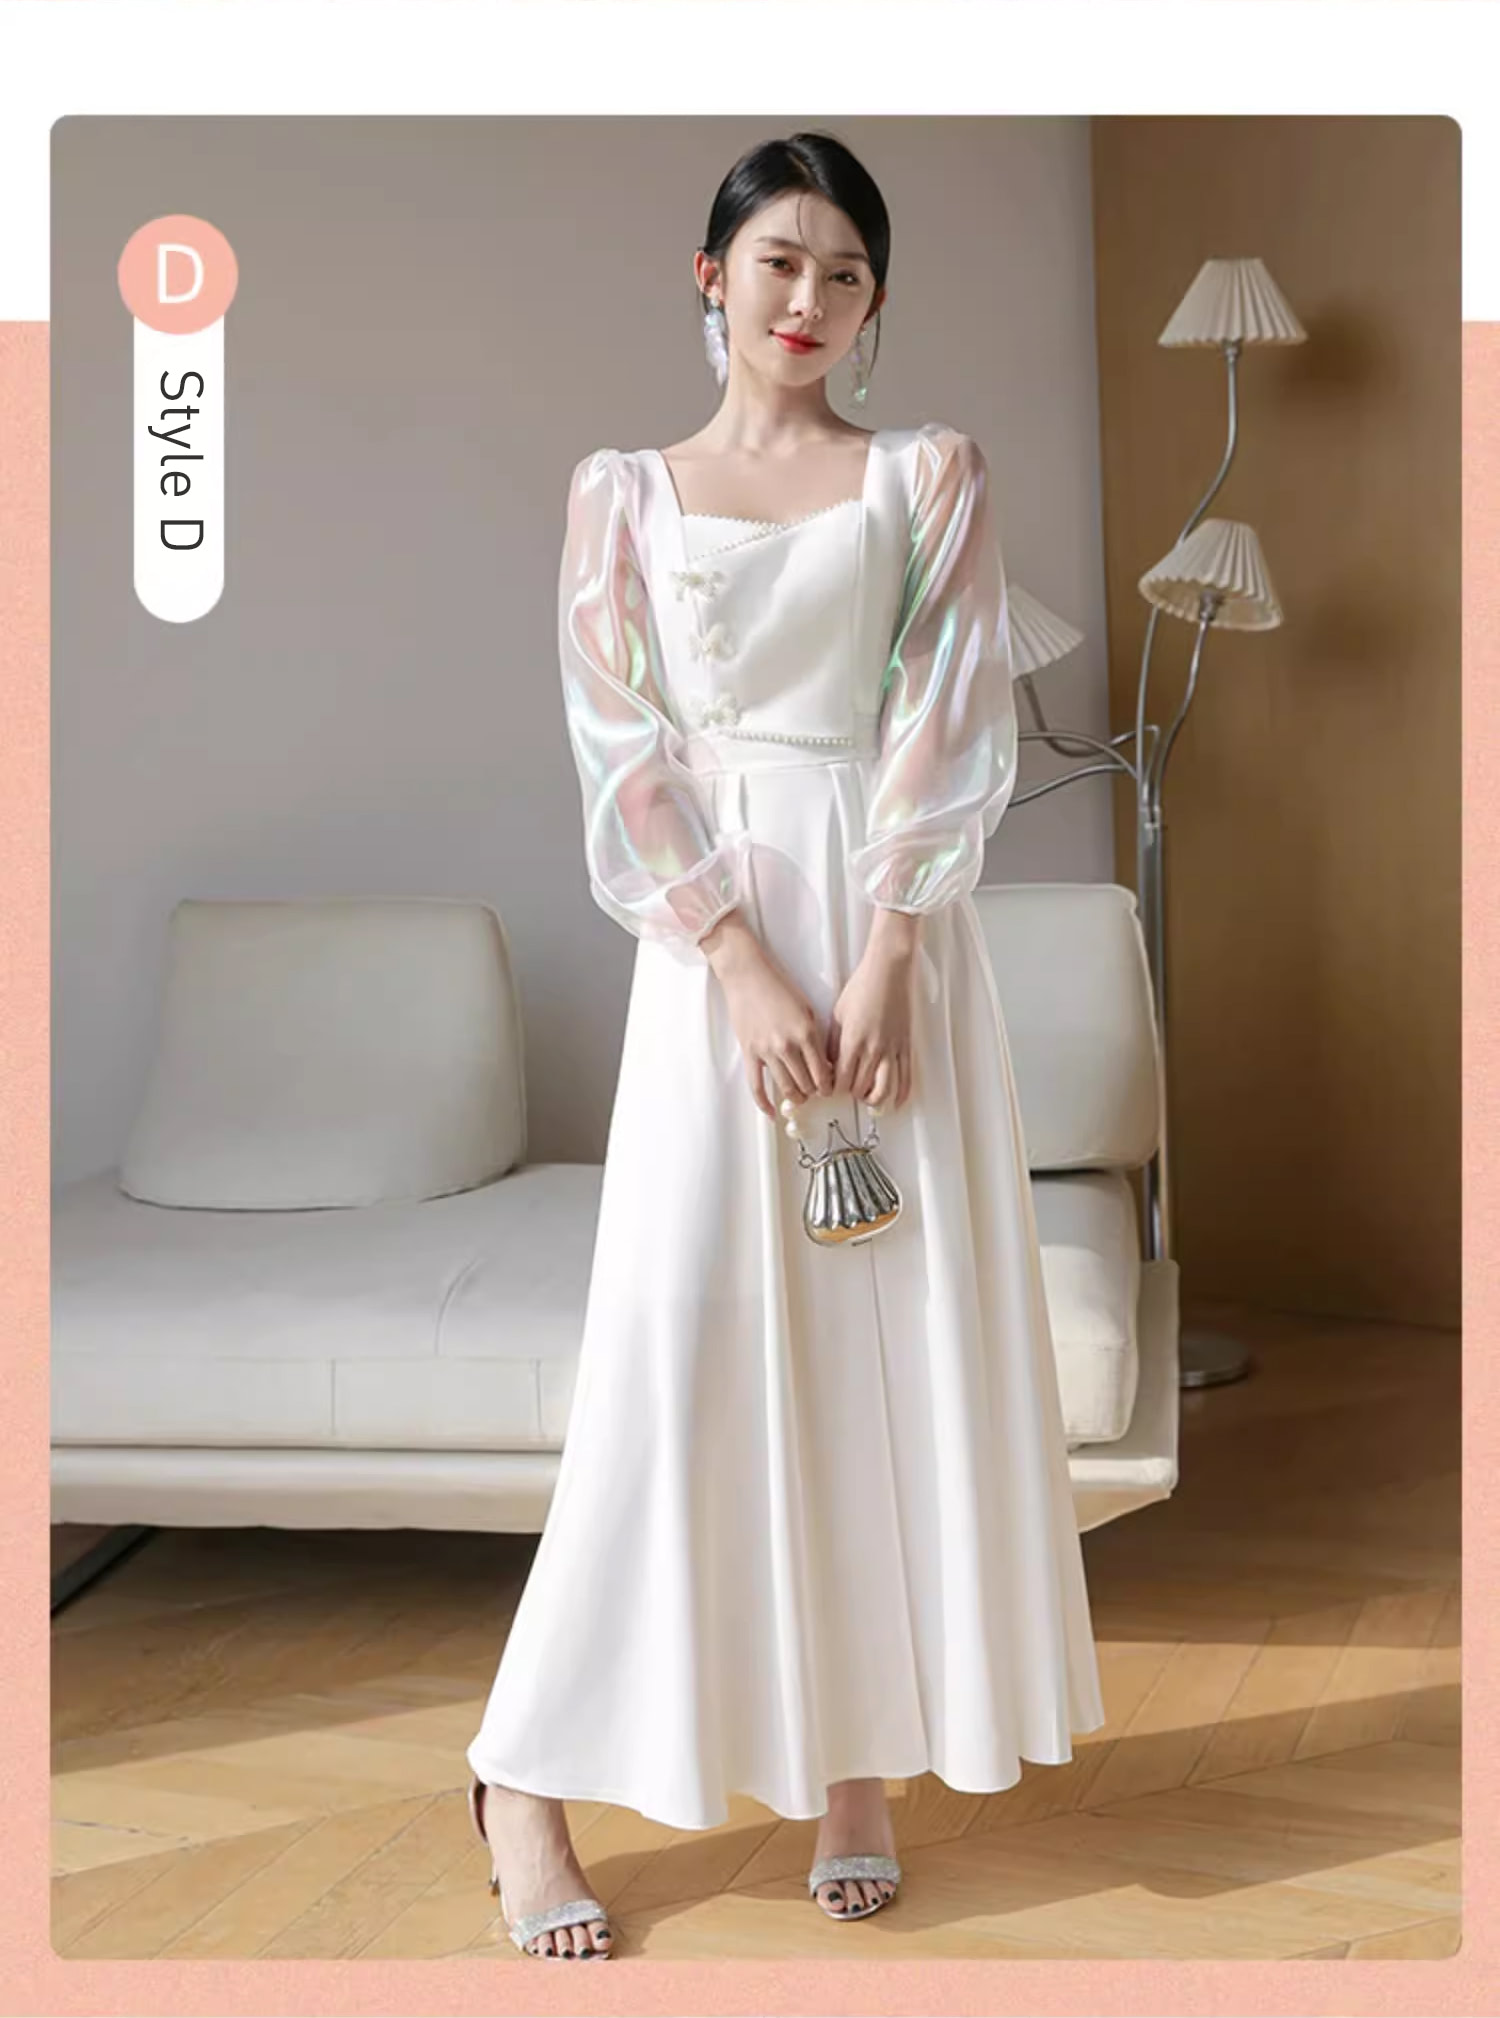 Unique-White-Wedding-Bridal-Party-Attire-Long-Dress-Evening-Gown23